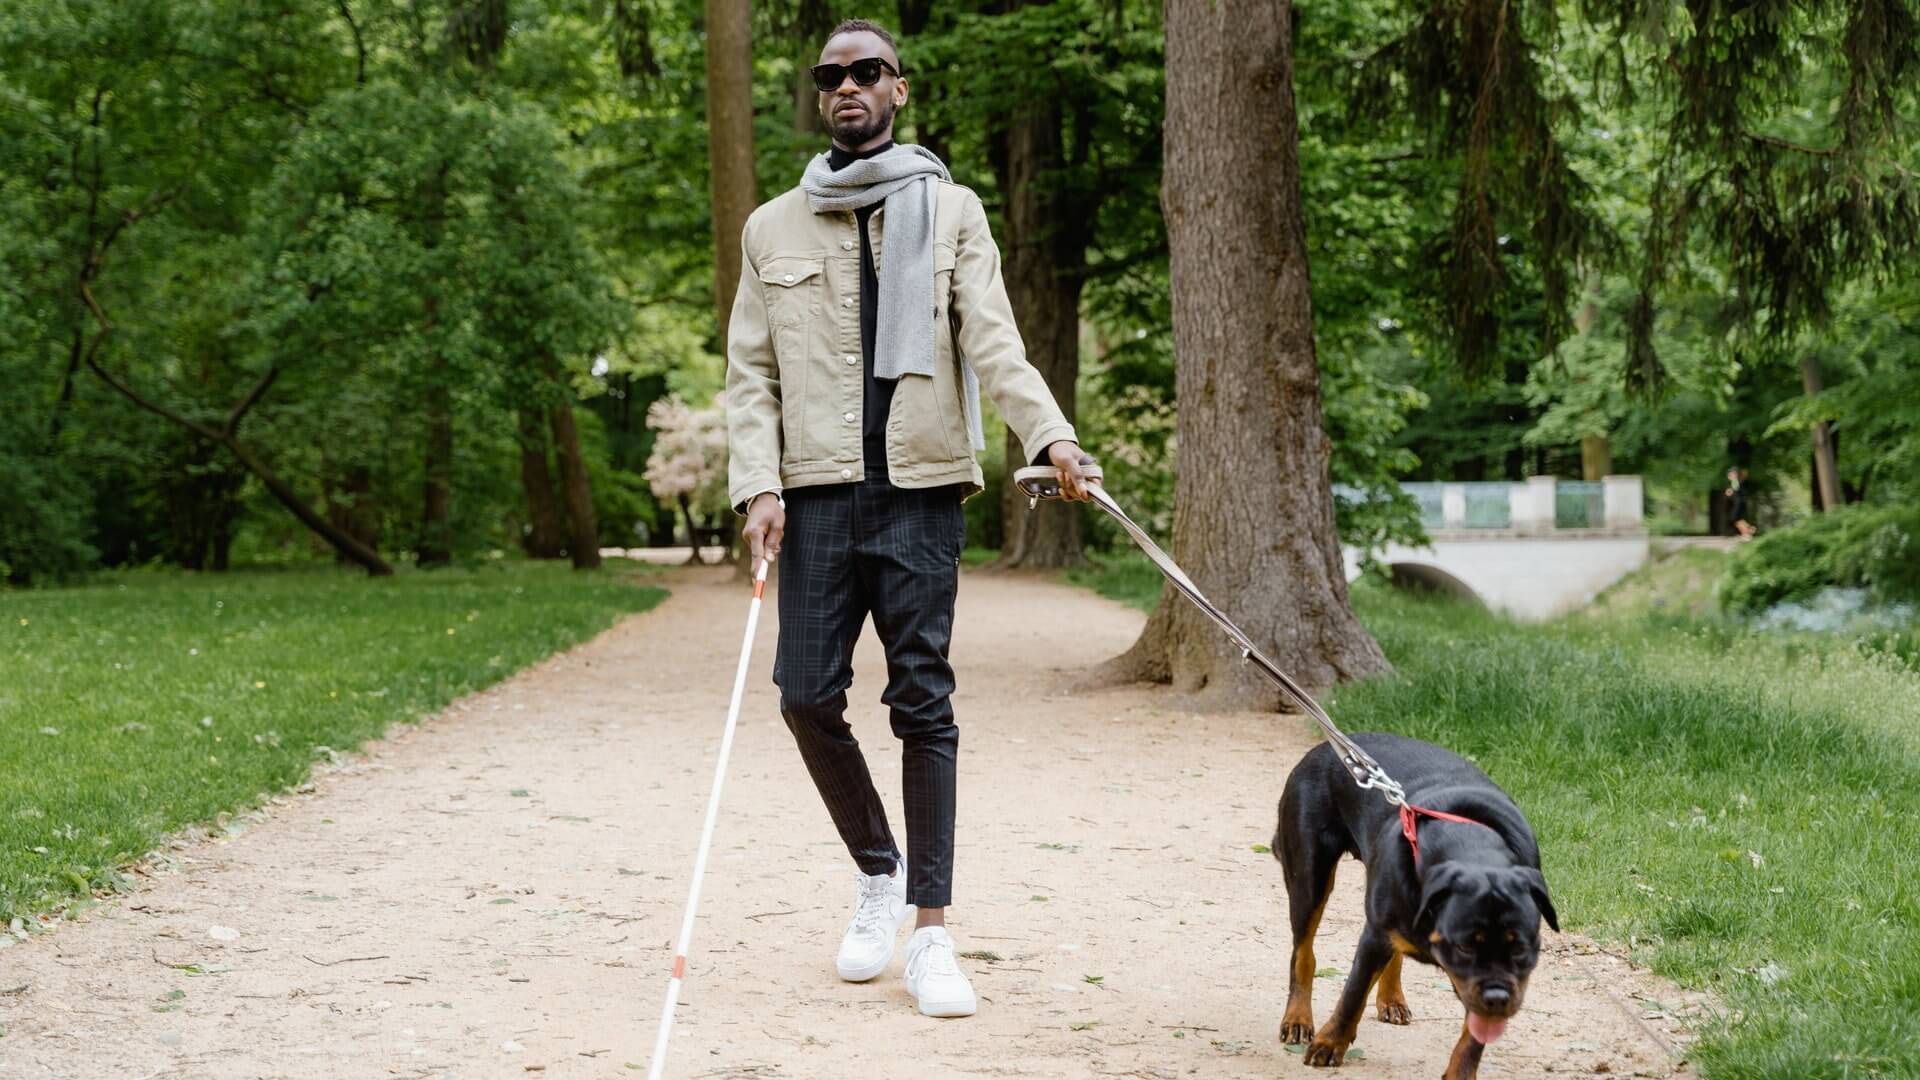 Niewidomy mężczyzna w parku z psem asystującym na smyczy